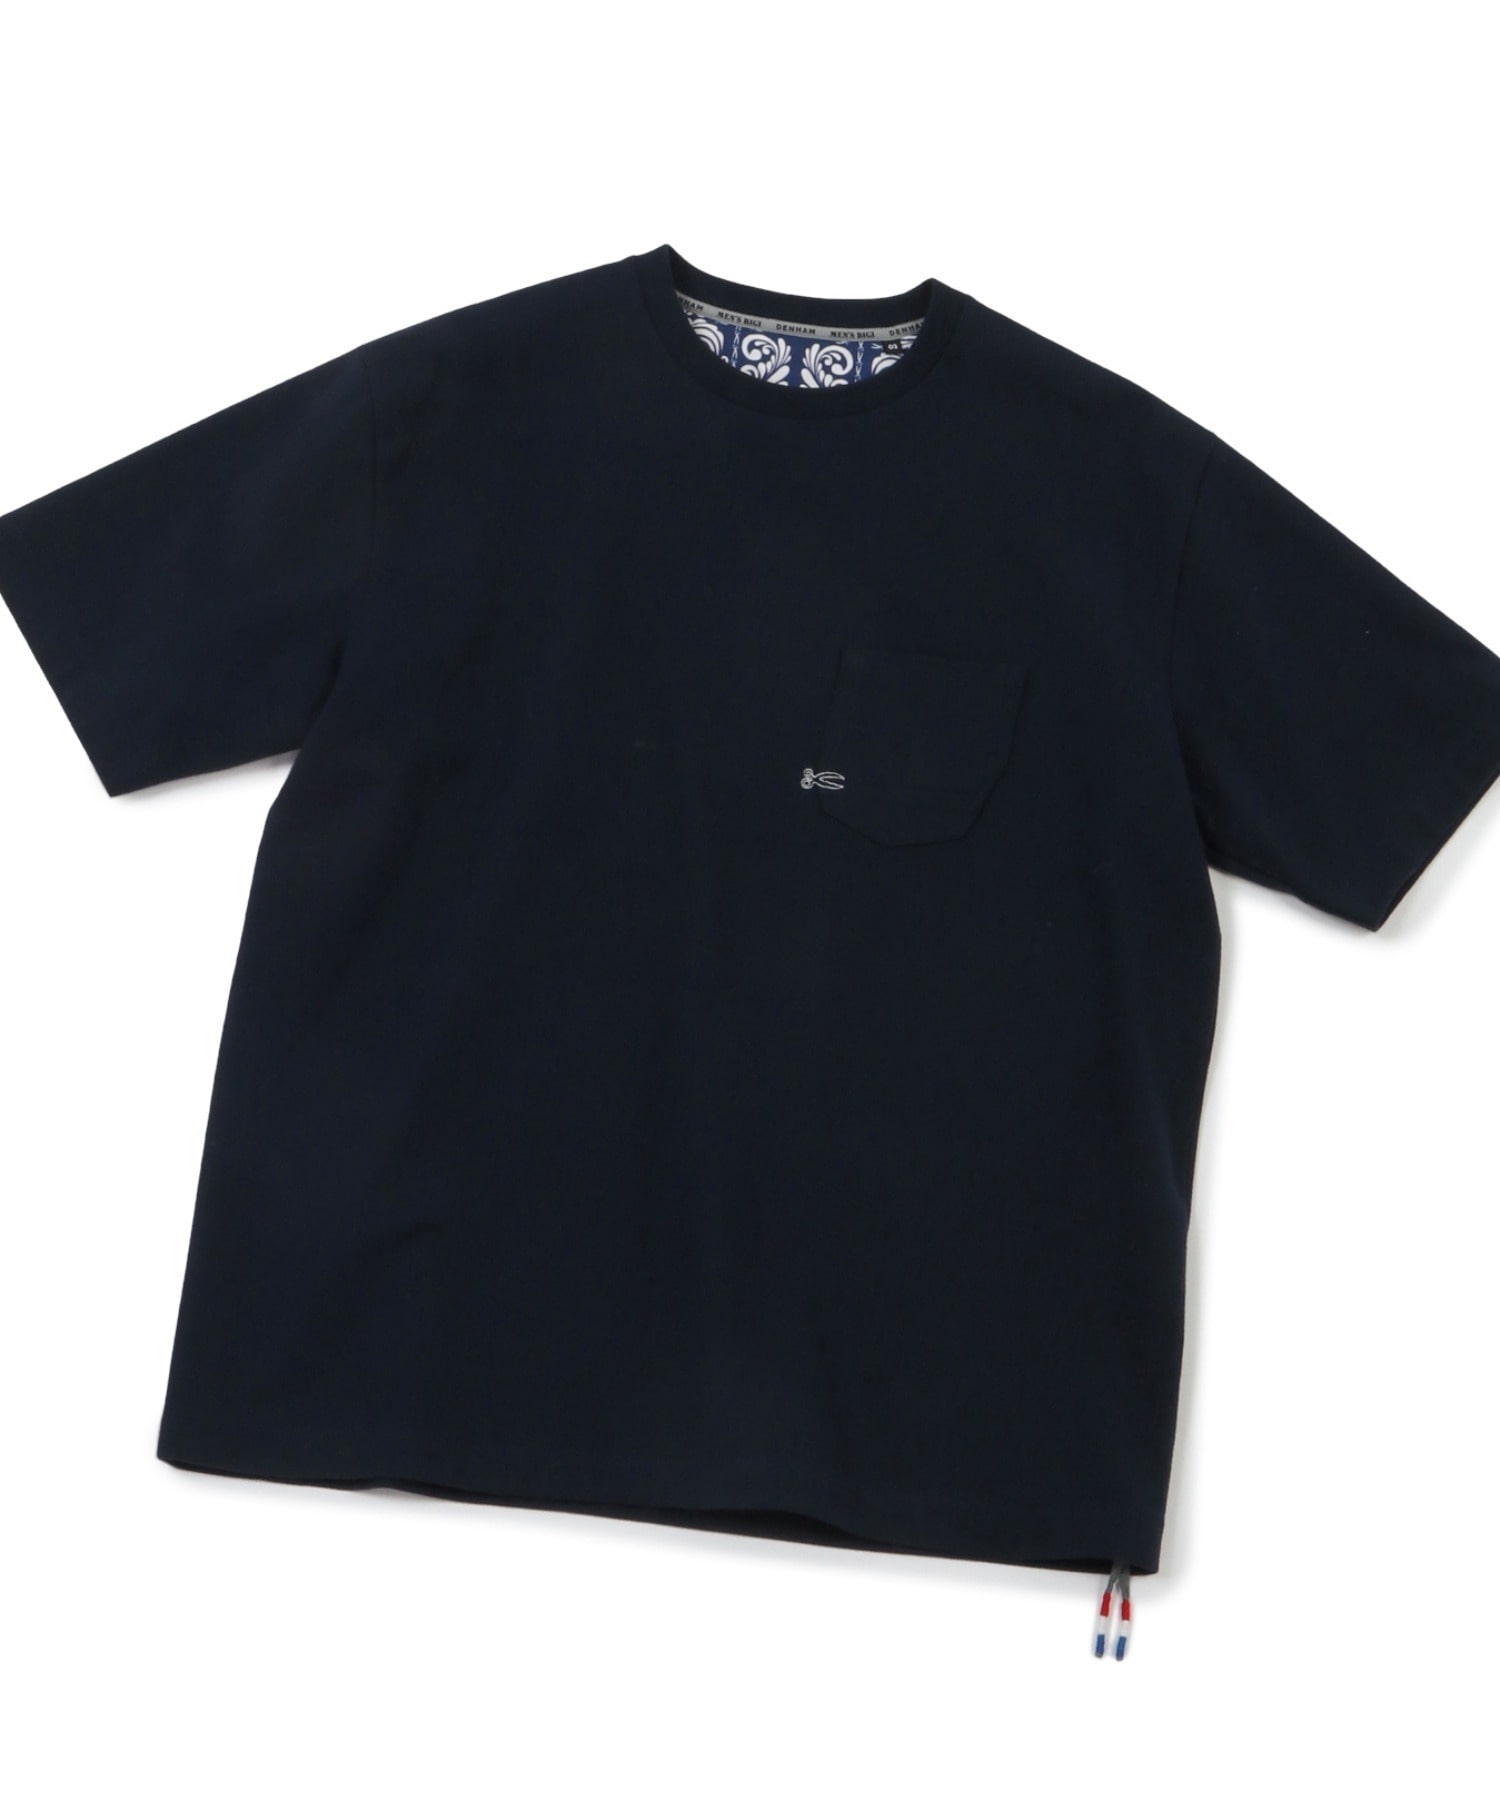 WHITEBLACKG【新品未使用】デンハム denham 3パックTシャツセット